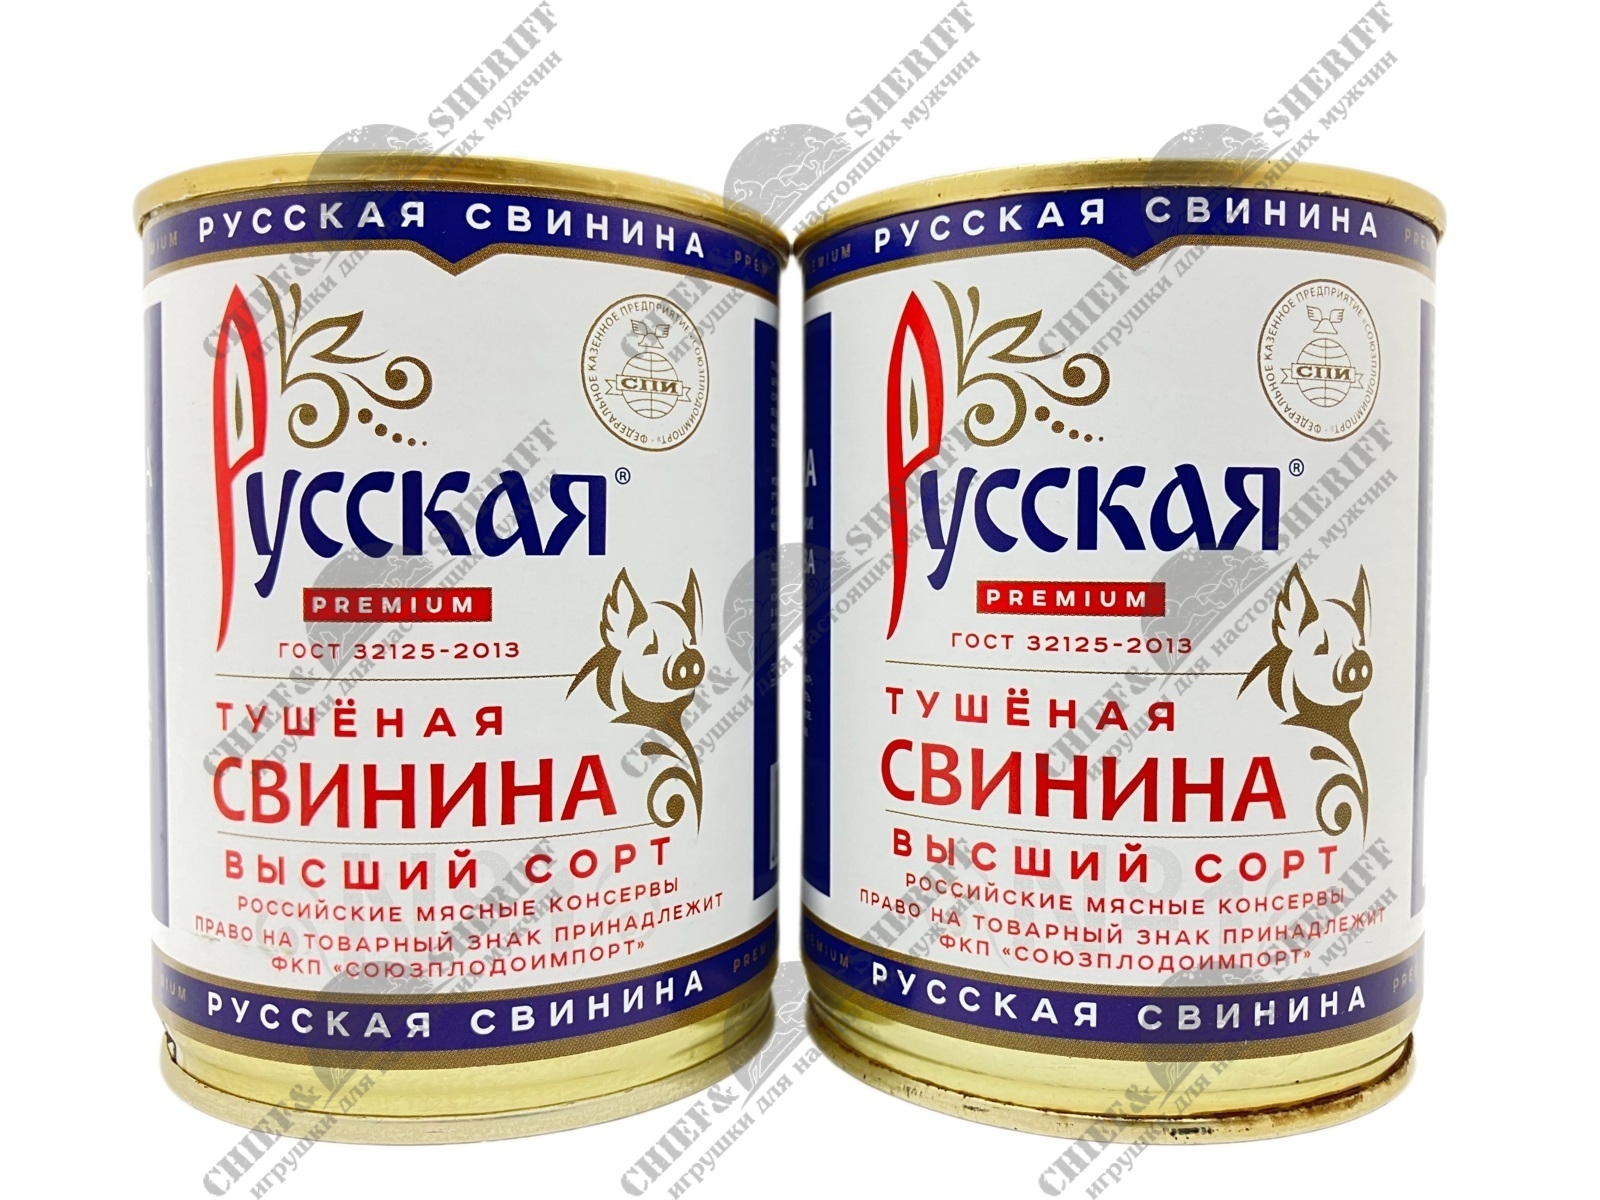 Свинина тушеная высший сорт, ГОСТ, Русская, 2 X 338 гр